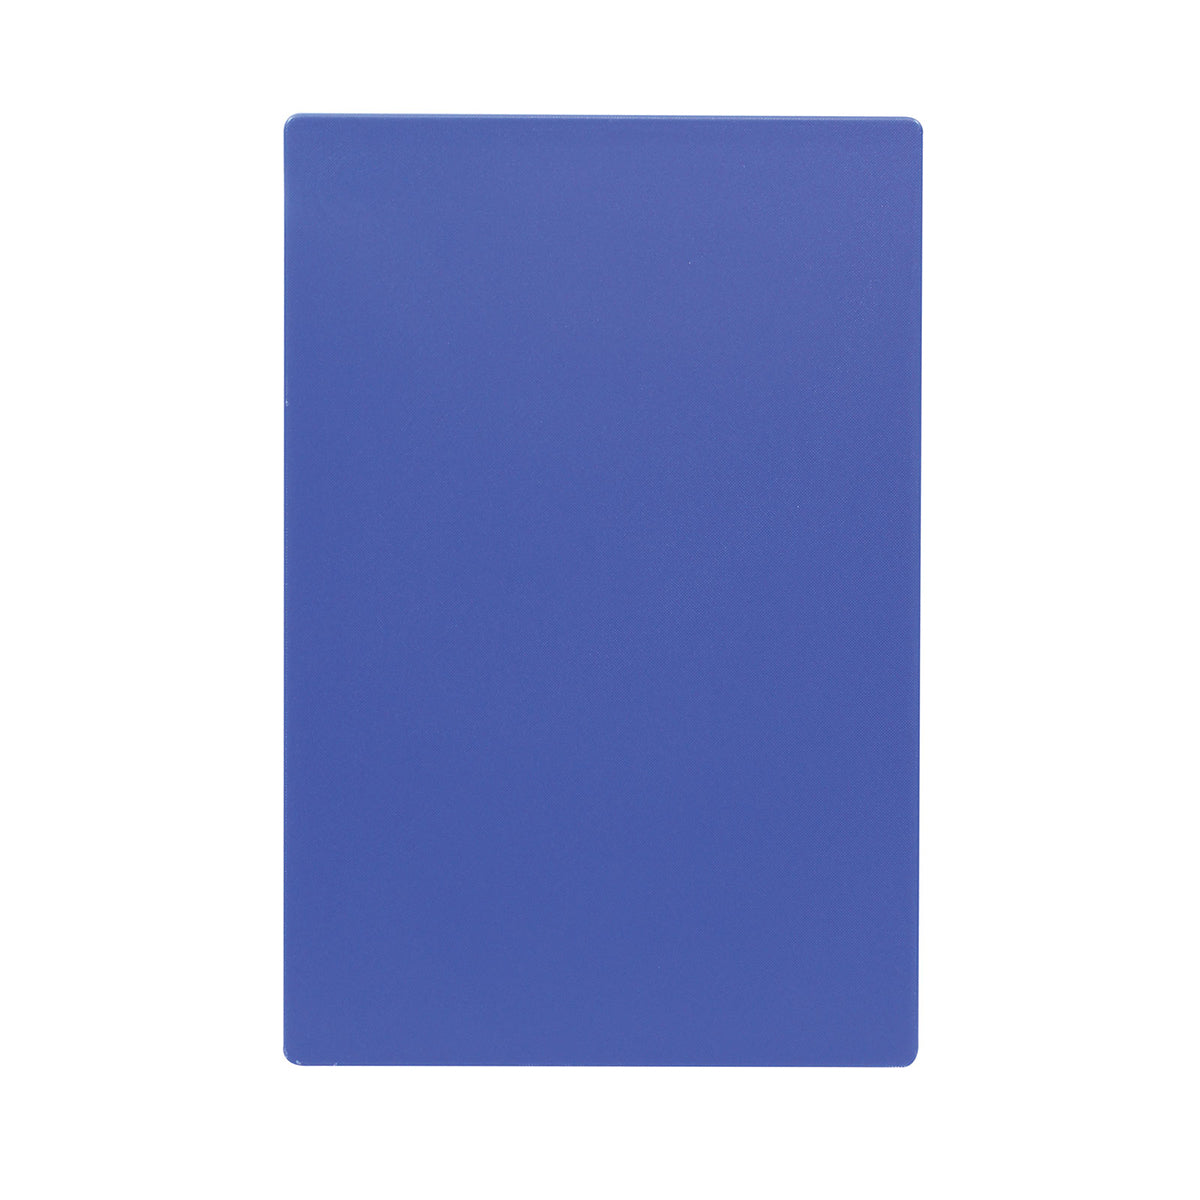 Tabla para Picar de Plástico Azul de 30 x 46 cm NSF